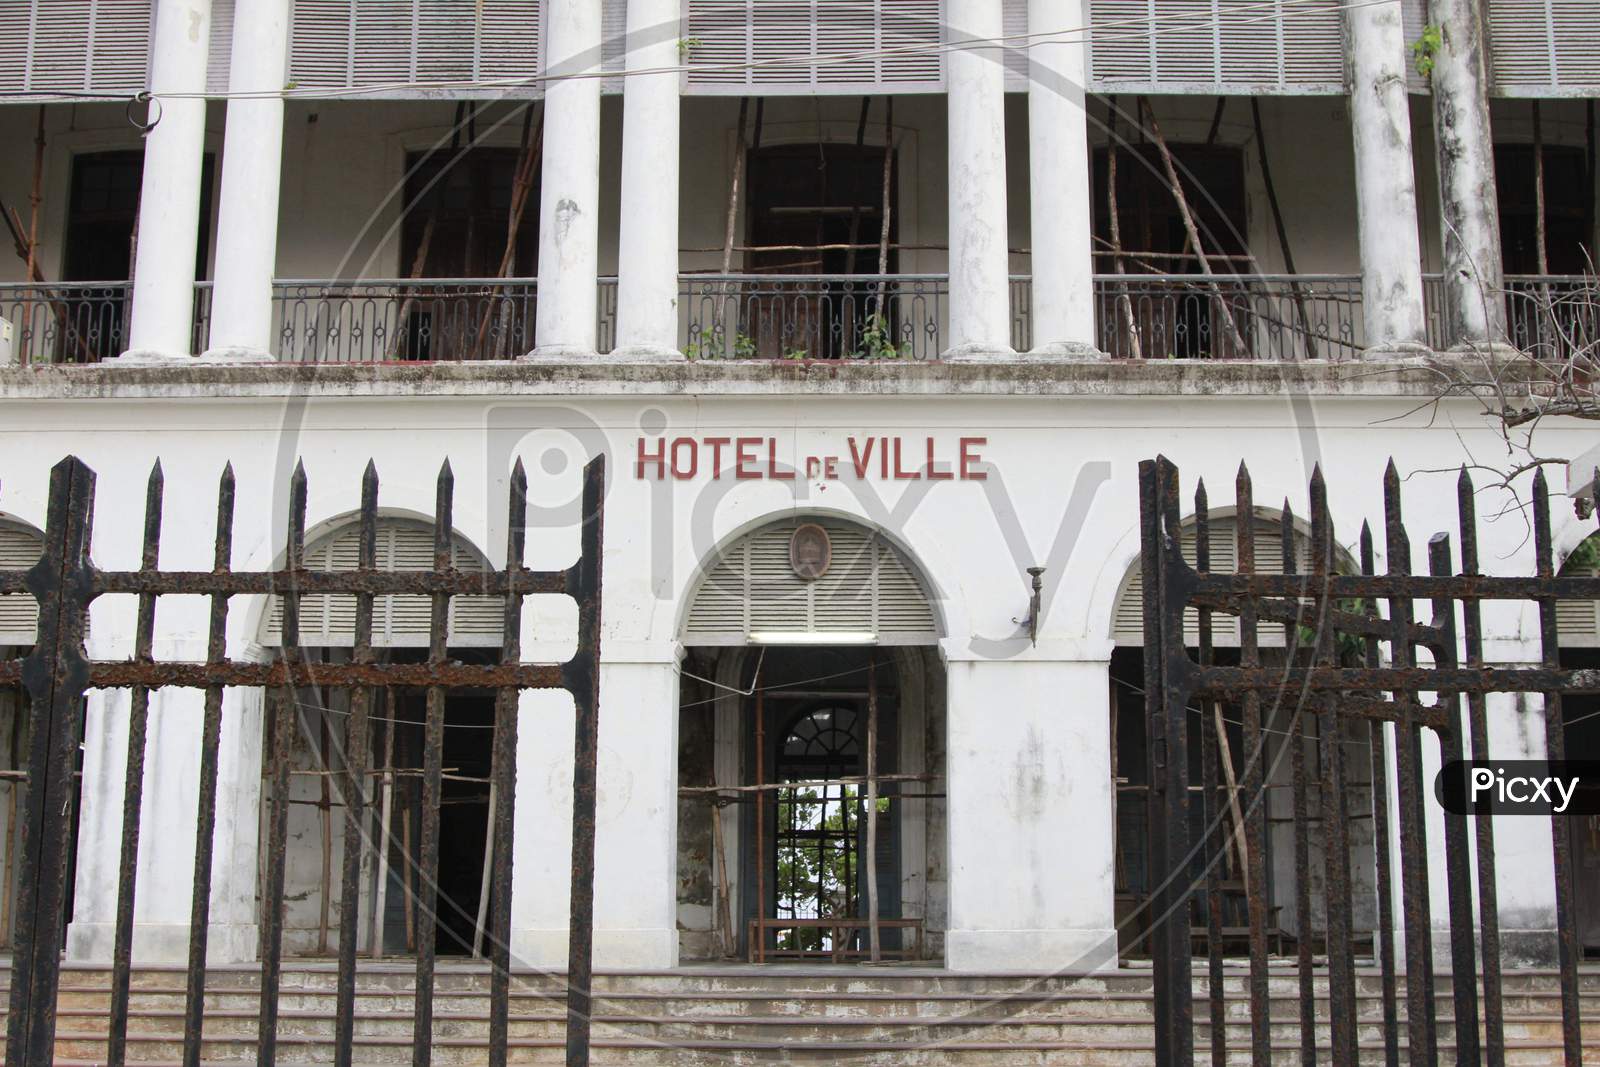 Hotel De Ville in Pondicherry